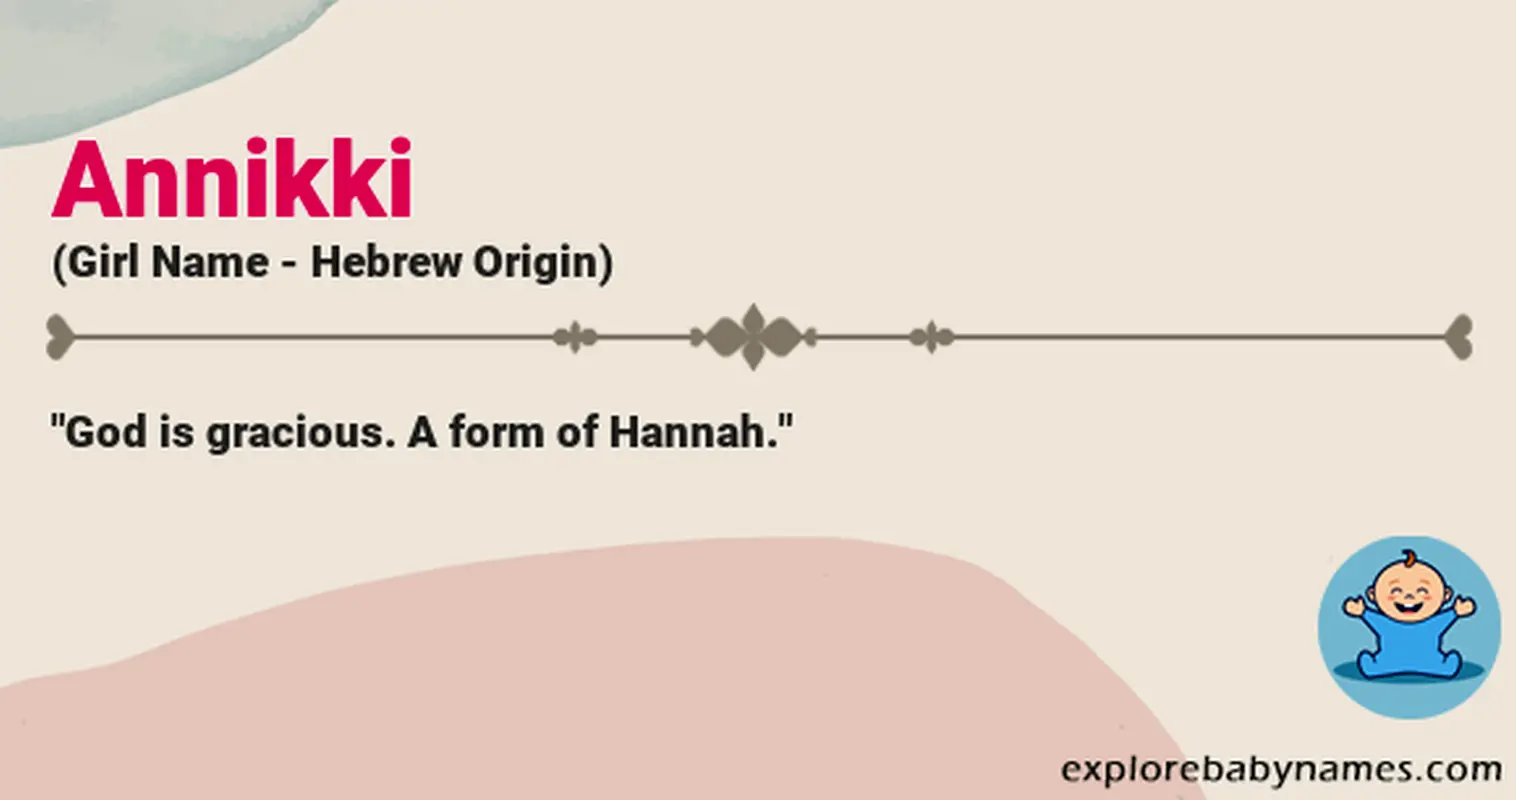 Meaning of Annikki